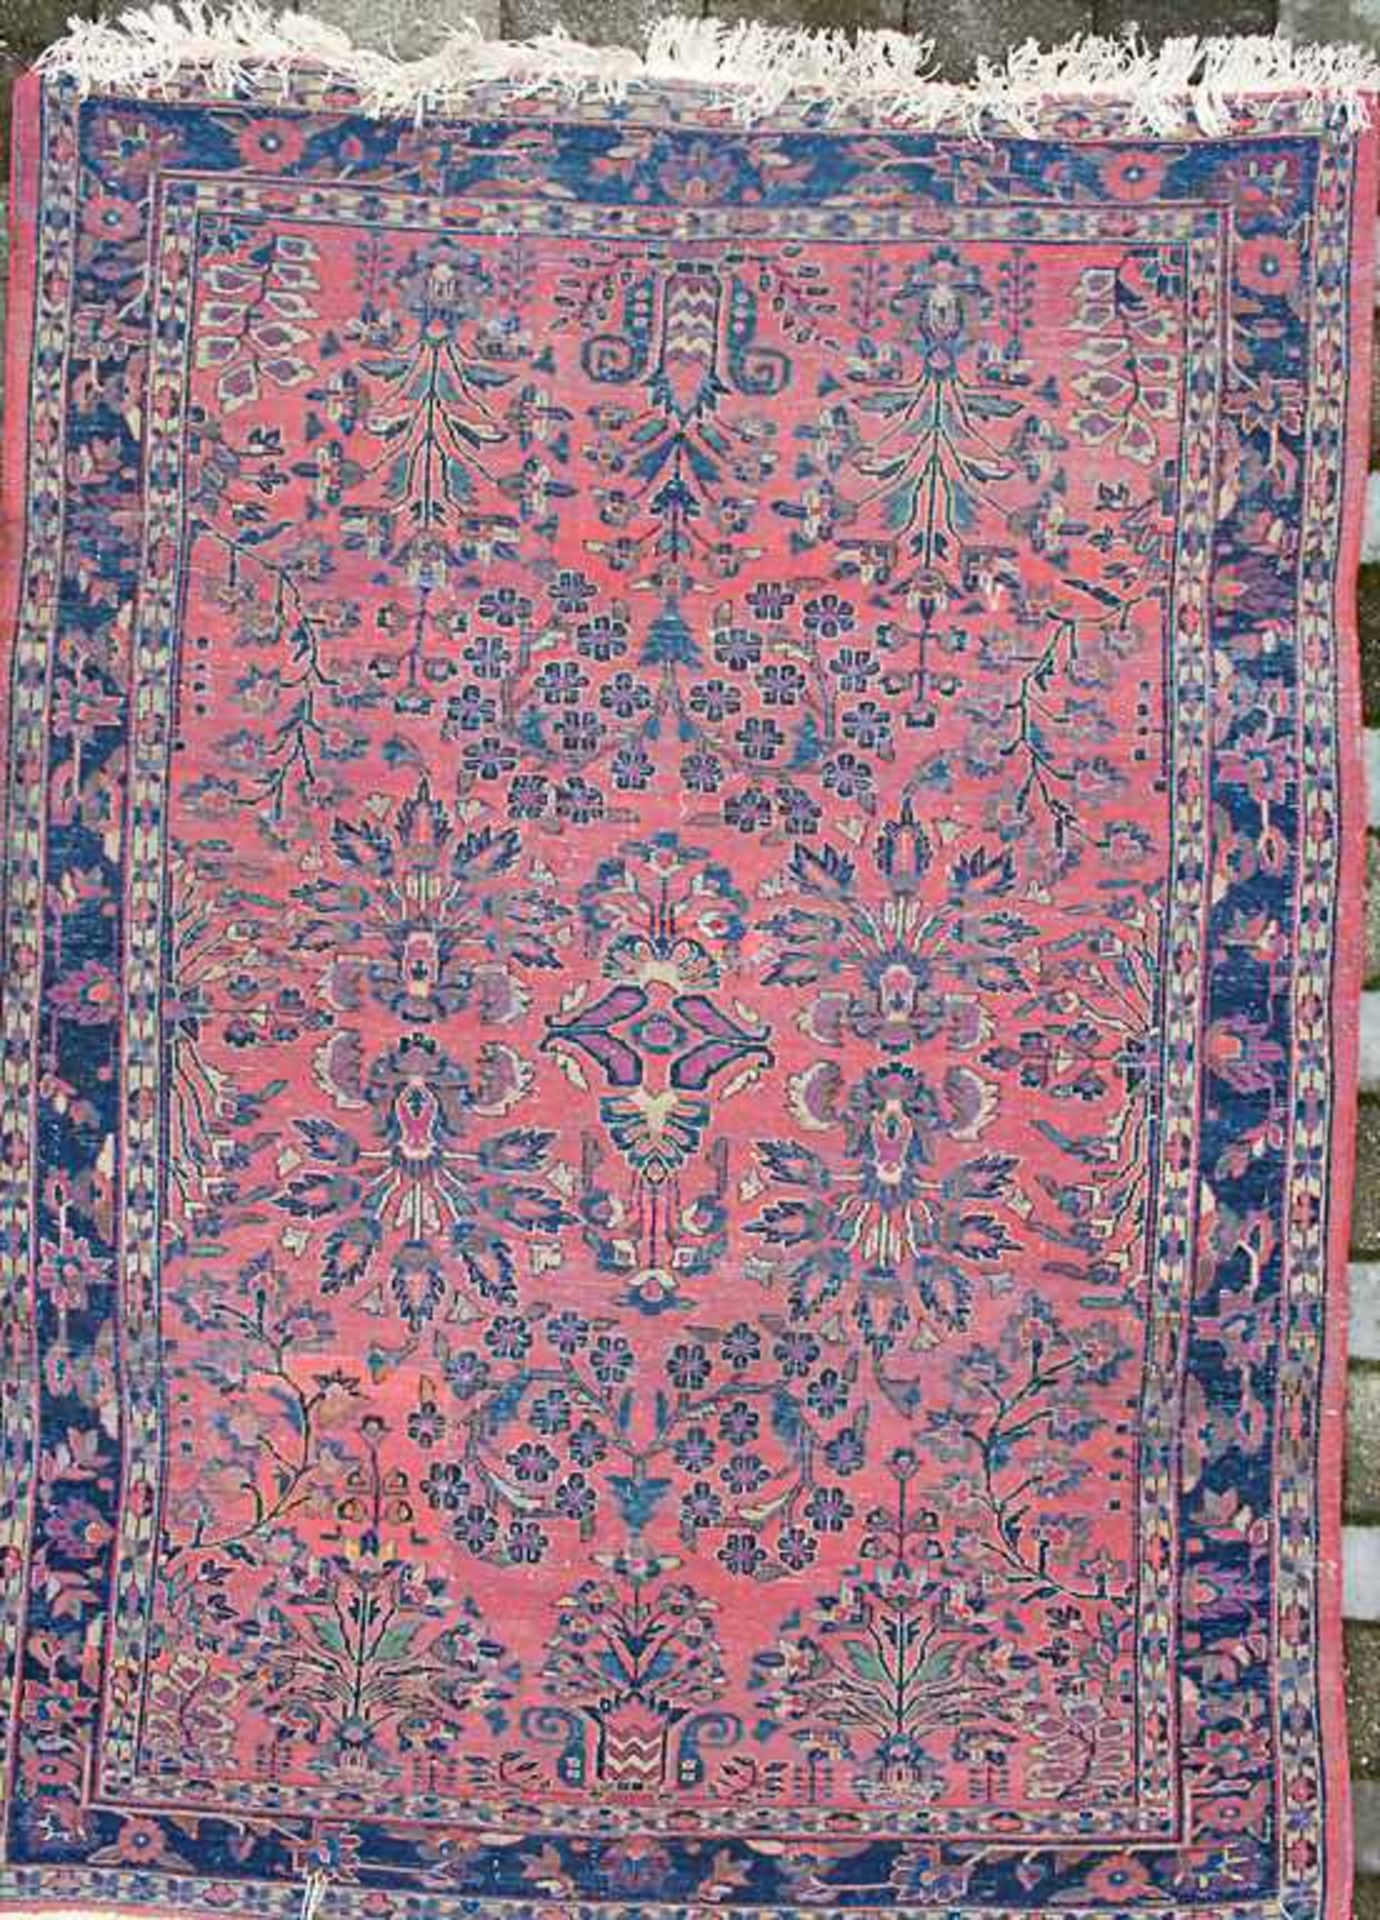 Orientteppich 'Saruk' / An oriental carpet 'Saruk'Material: Wolle auf Baumwolle, Maße: 200 x 140 cm, - Bild 2 aus 8